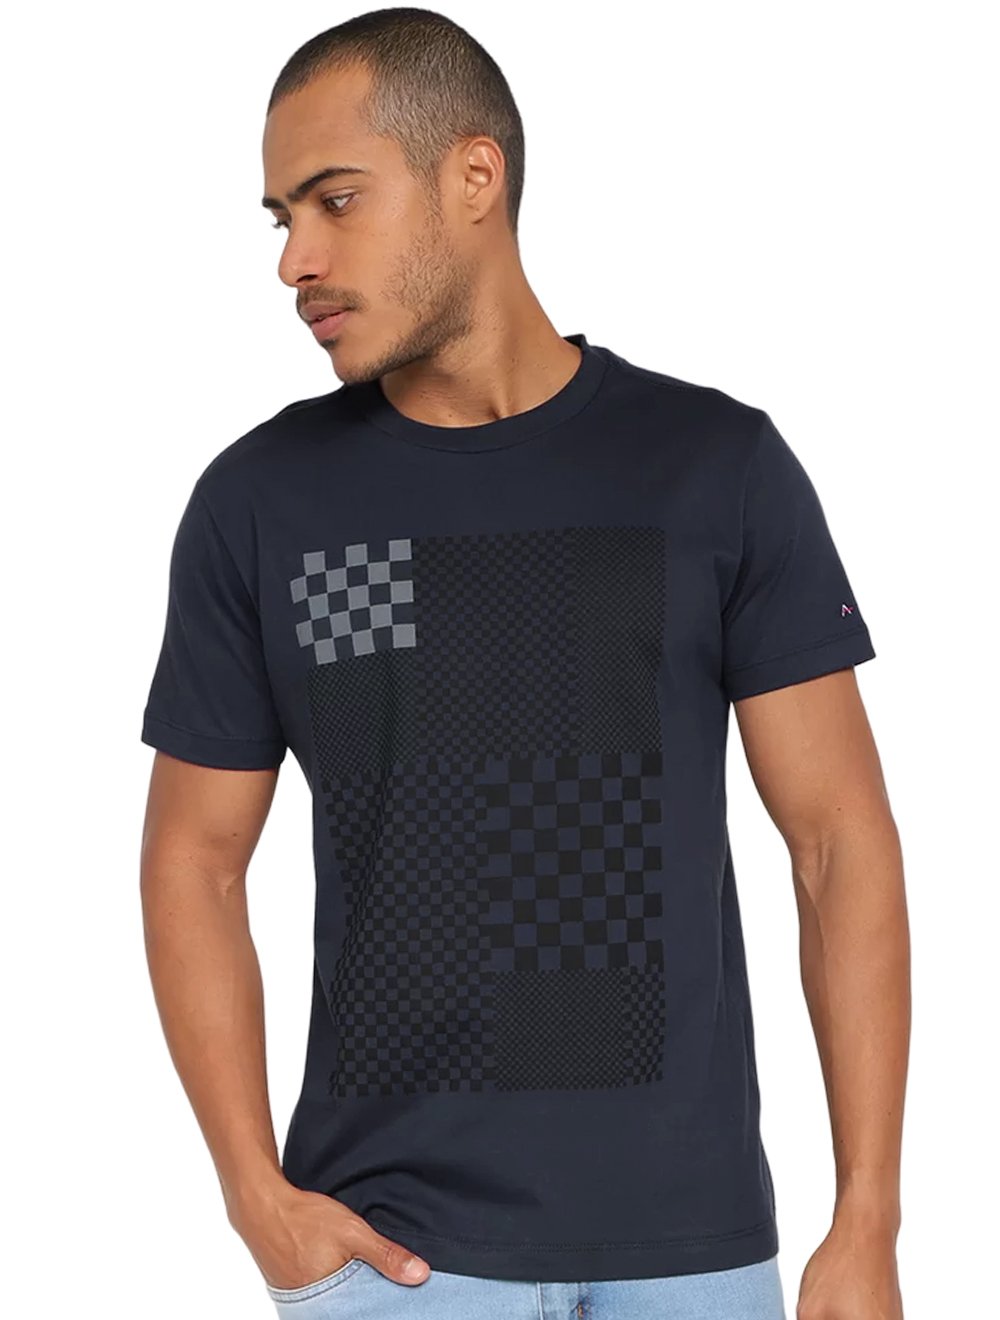 Camiseta Aramis Masculina Regular Chess Azul Marinho